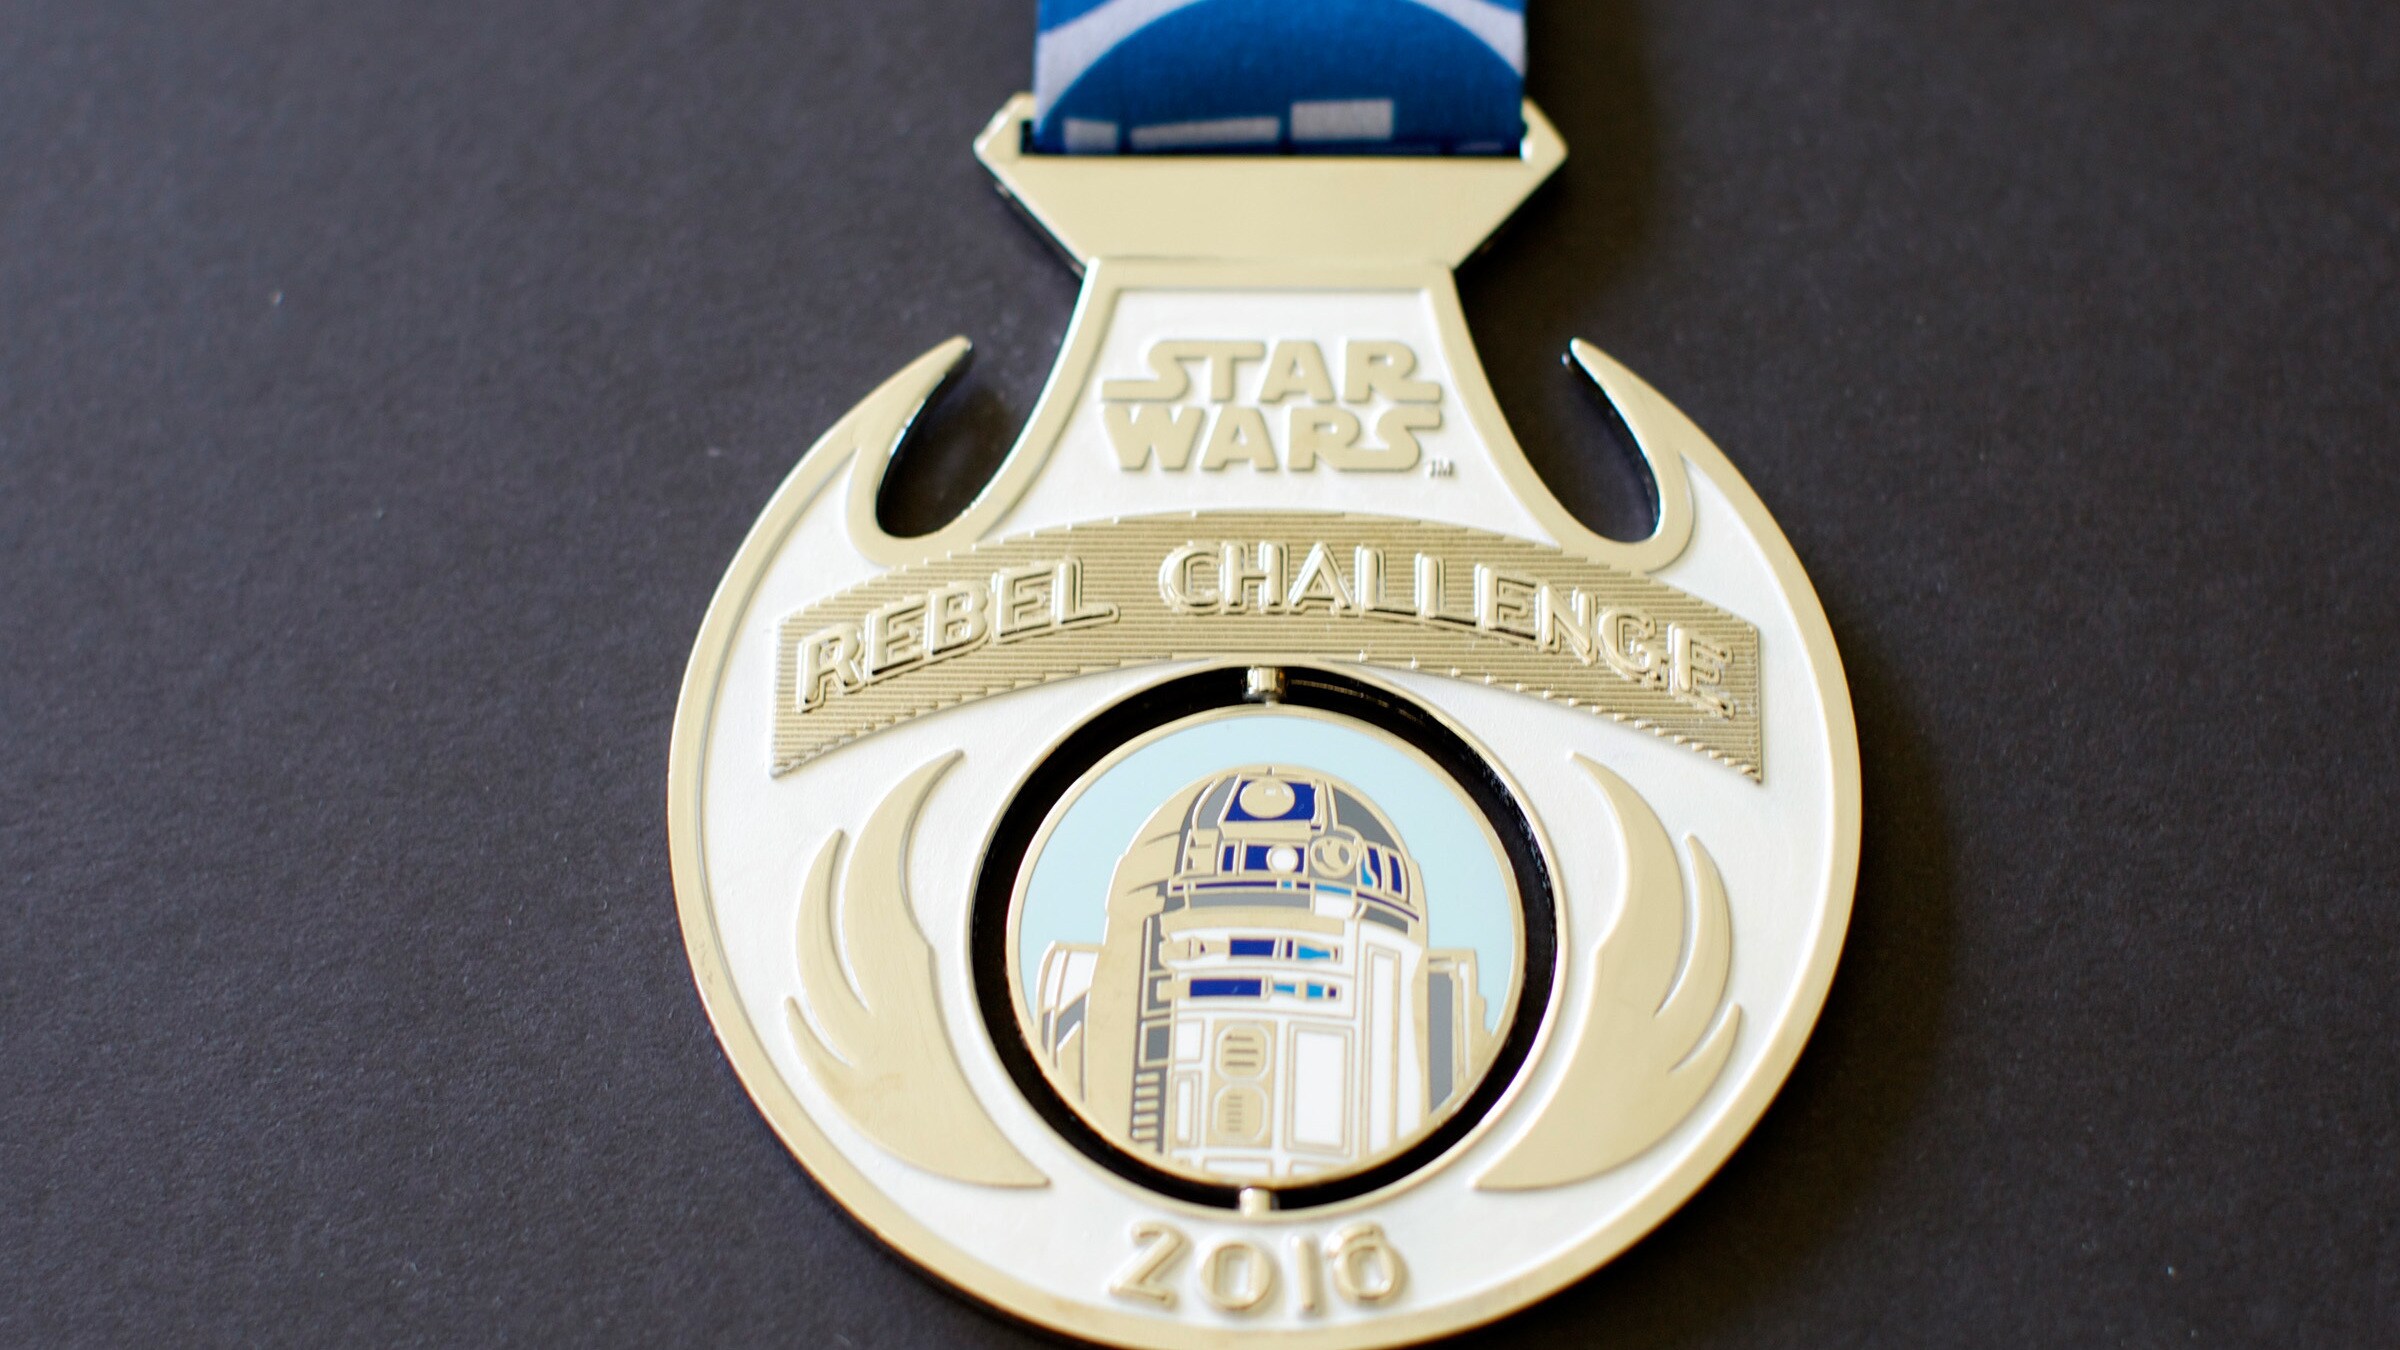 runDisney Star Wars Rebel Challenge